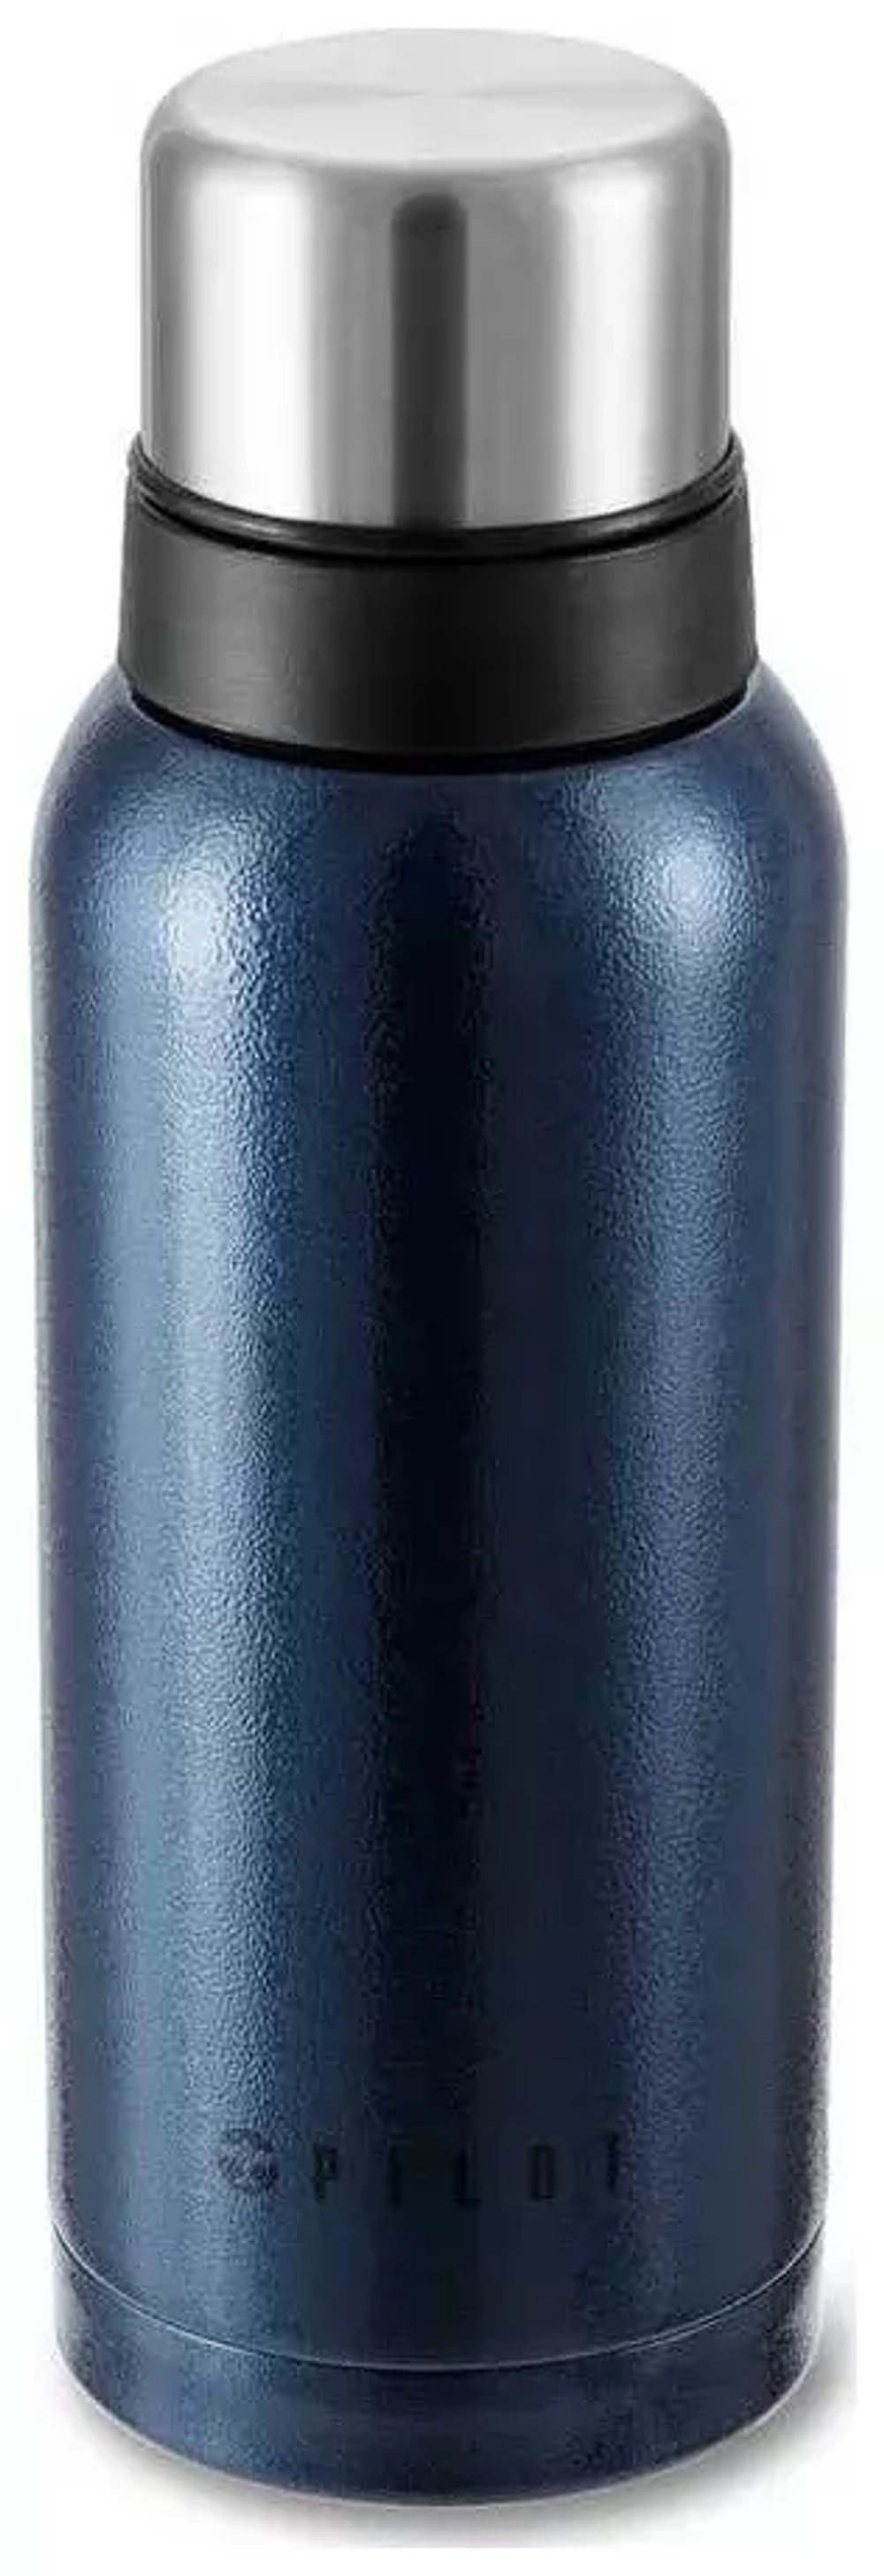 Термос 1 литр, синий (молотковое покрытие)